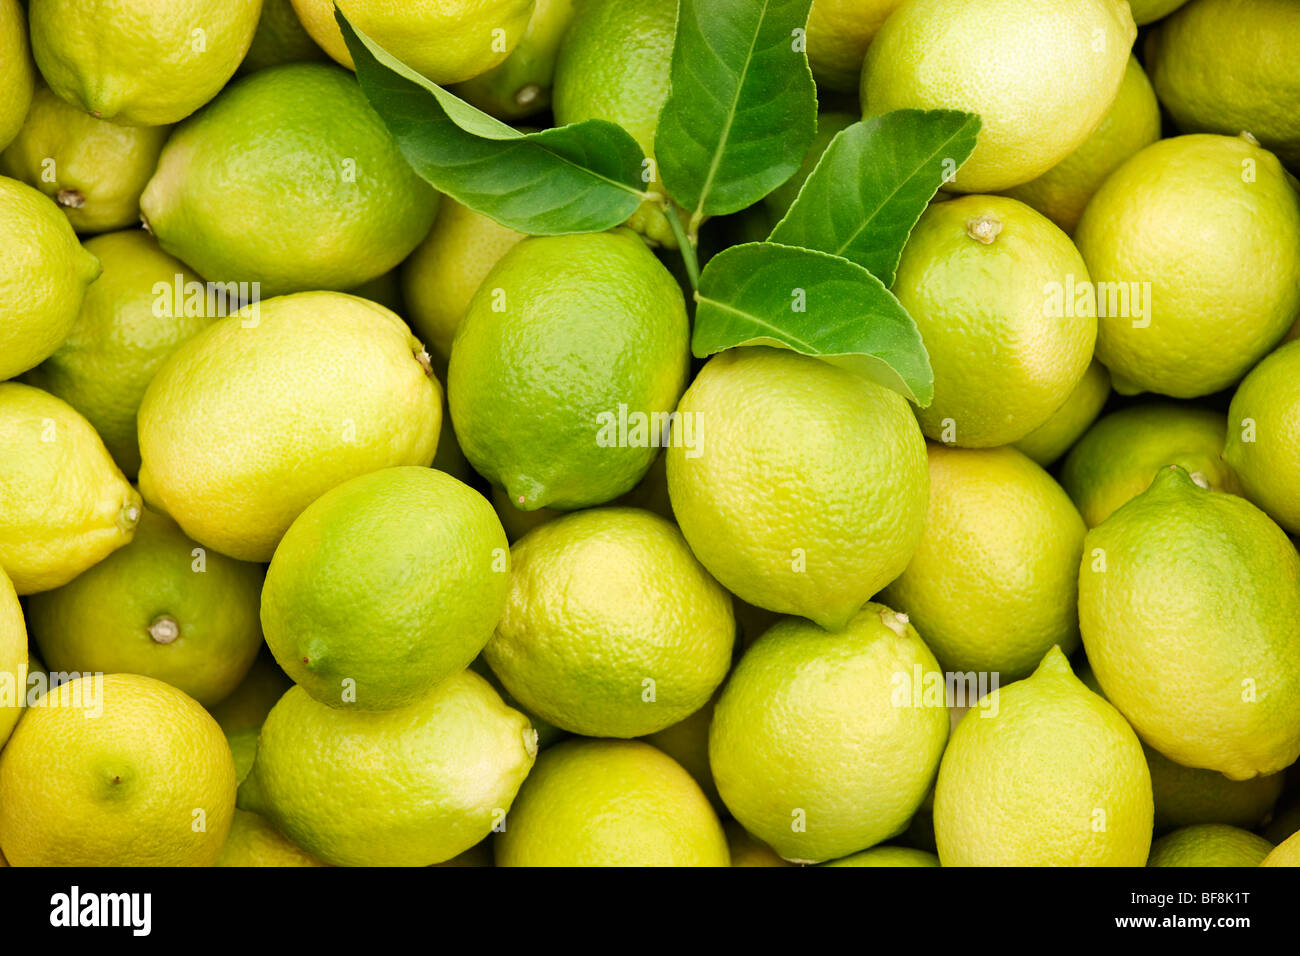 Group of fresh lemons Stock Photo